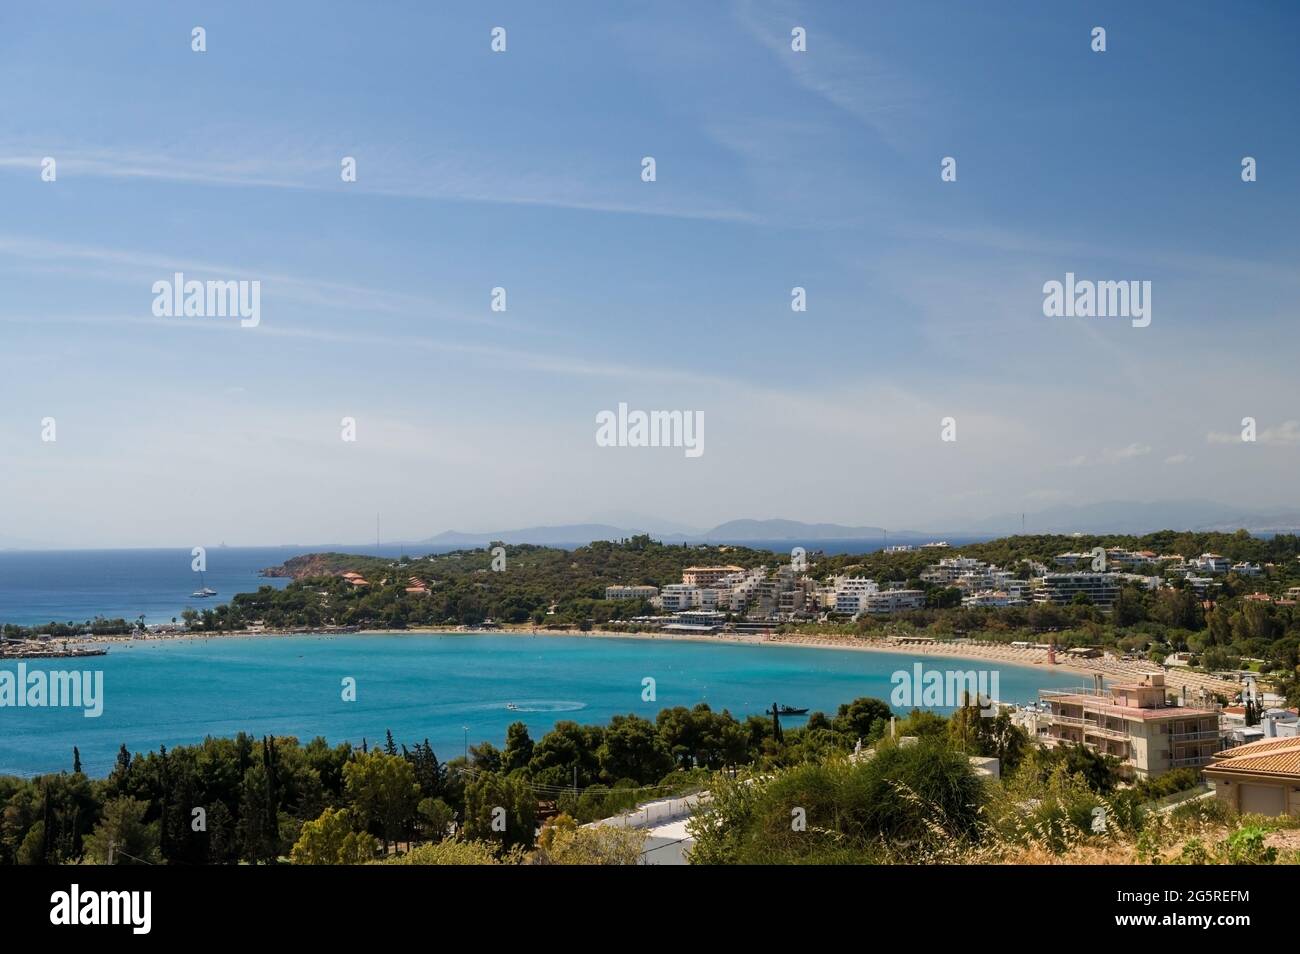 Paesaggio urbano della riva del mare in Grecia. Vista dall'alto. Architettura urbana e molti alberi verdi. Zona collinare. Giorno di sole. Mar Egeo. Foto Stock